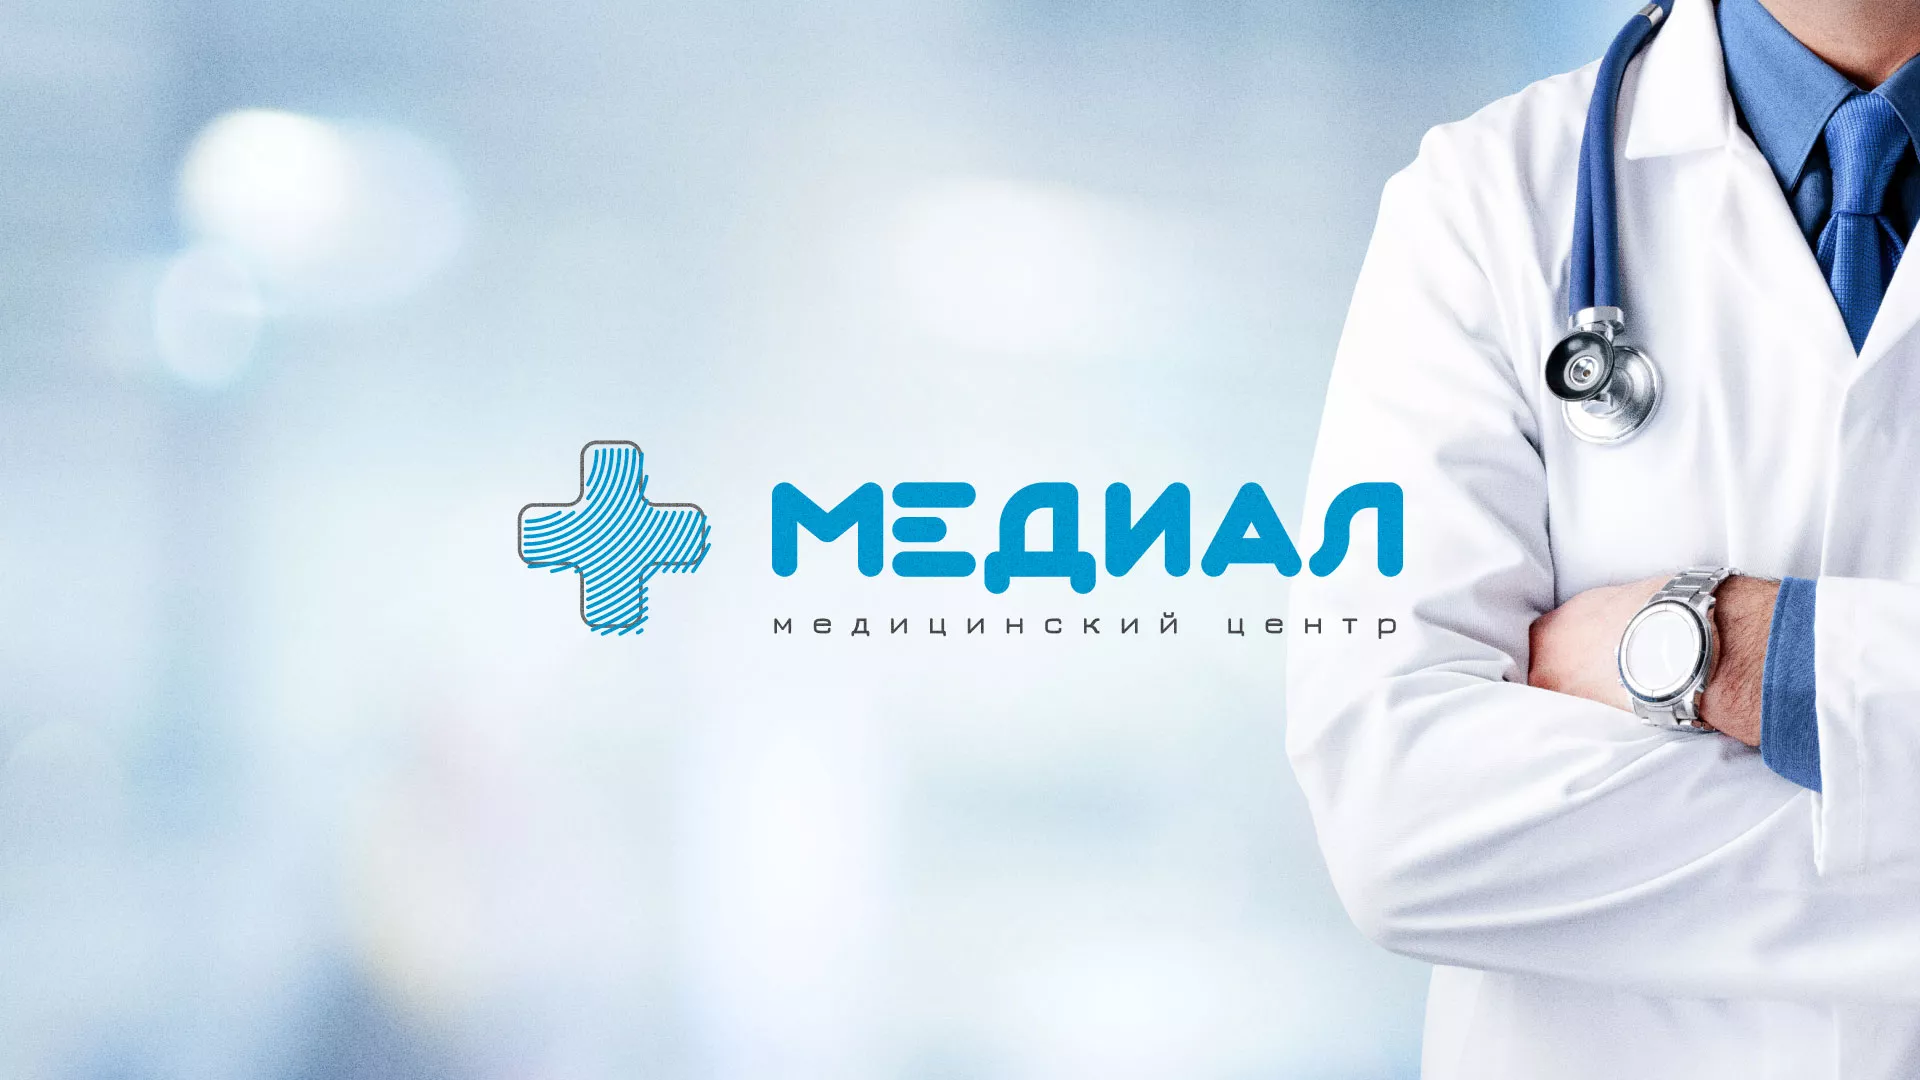 Создание сайта для медицинского центра «Медиал» в Николаевске